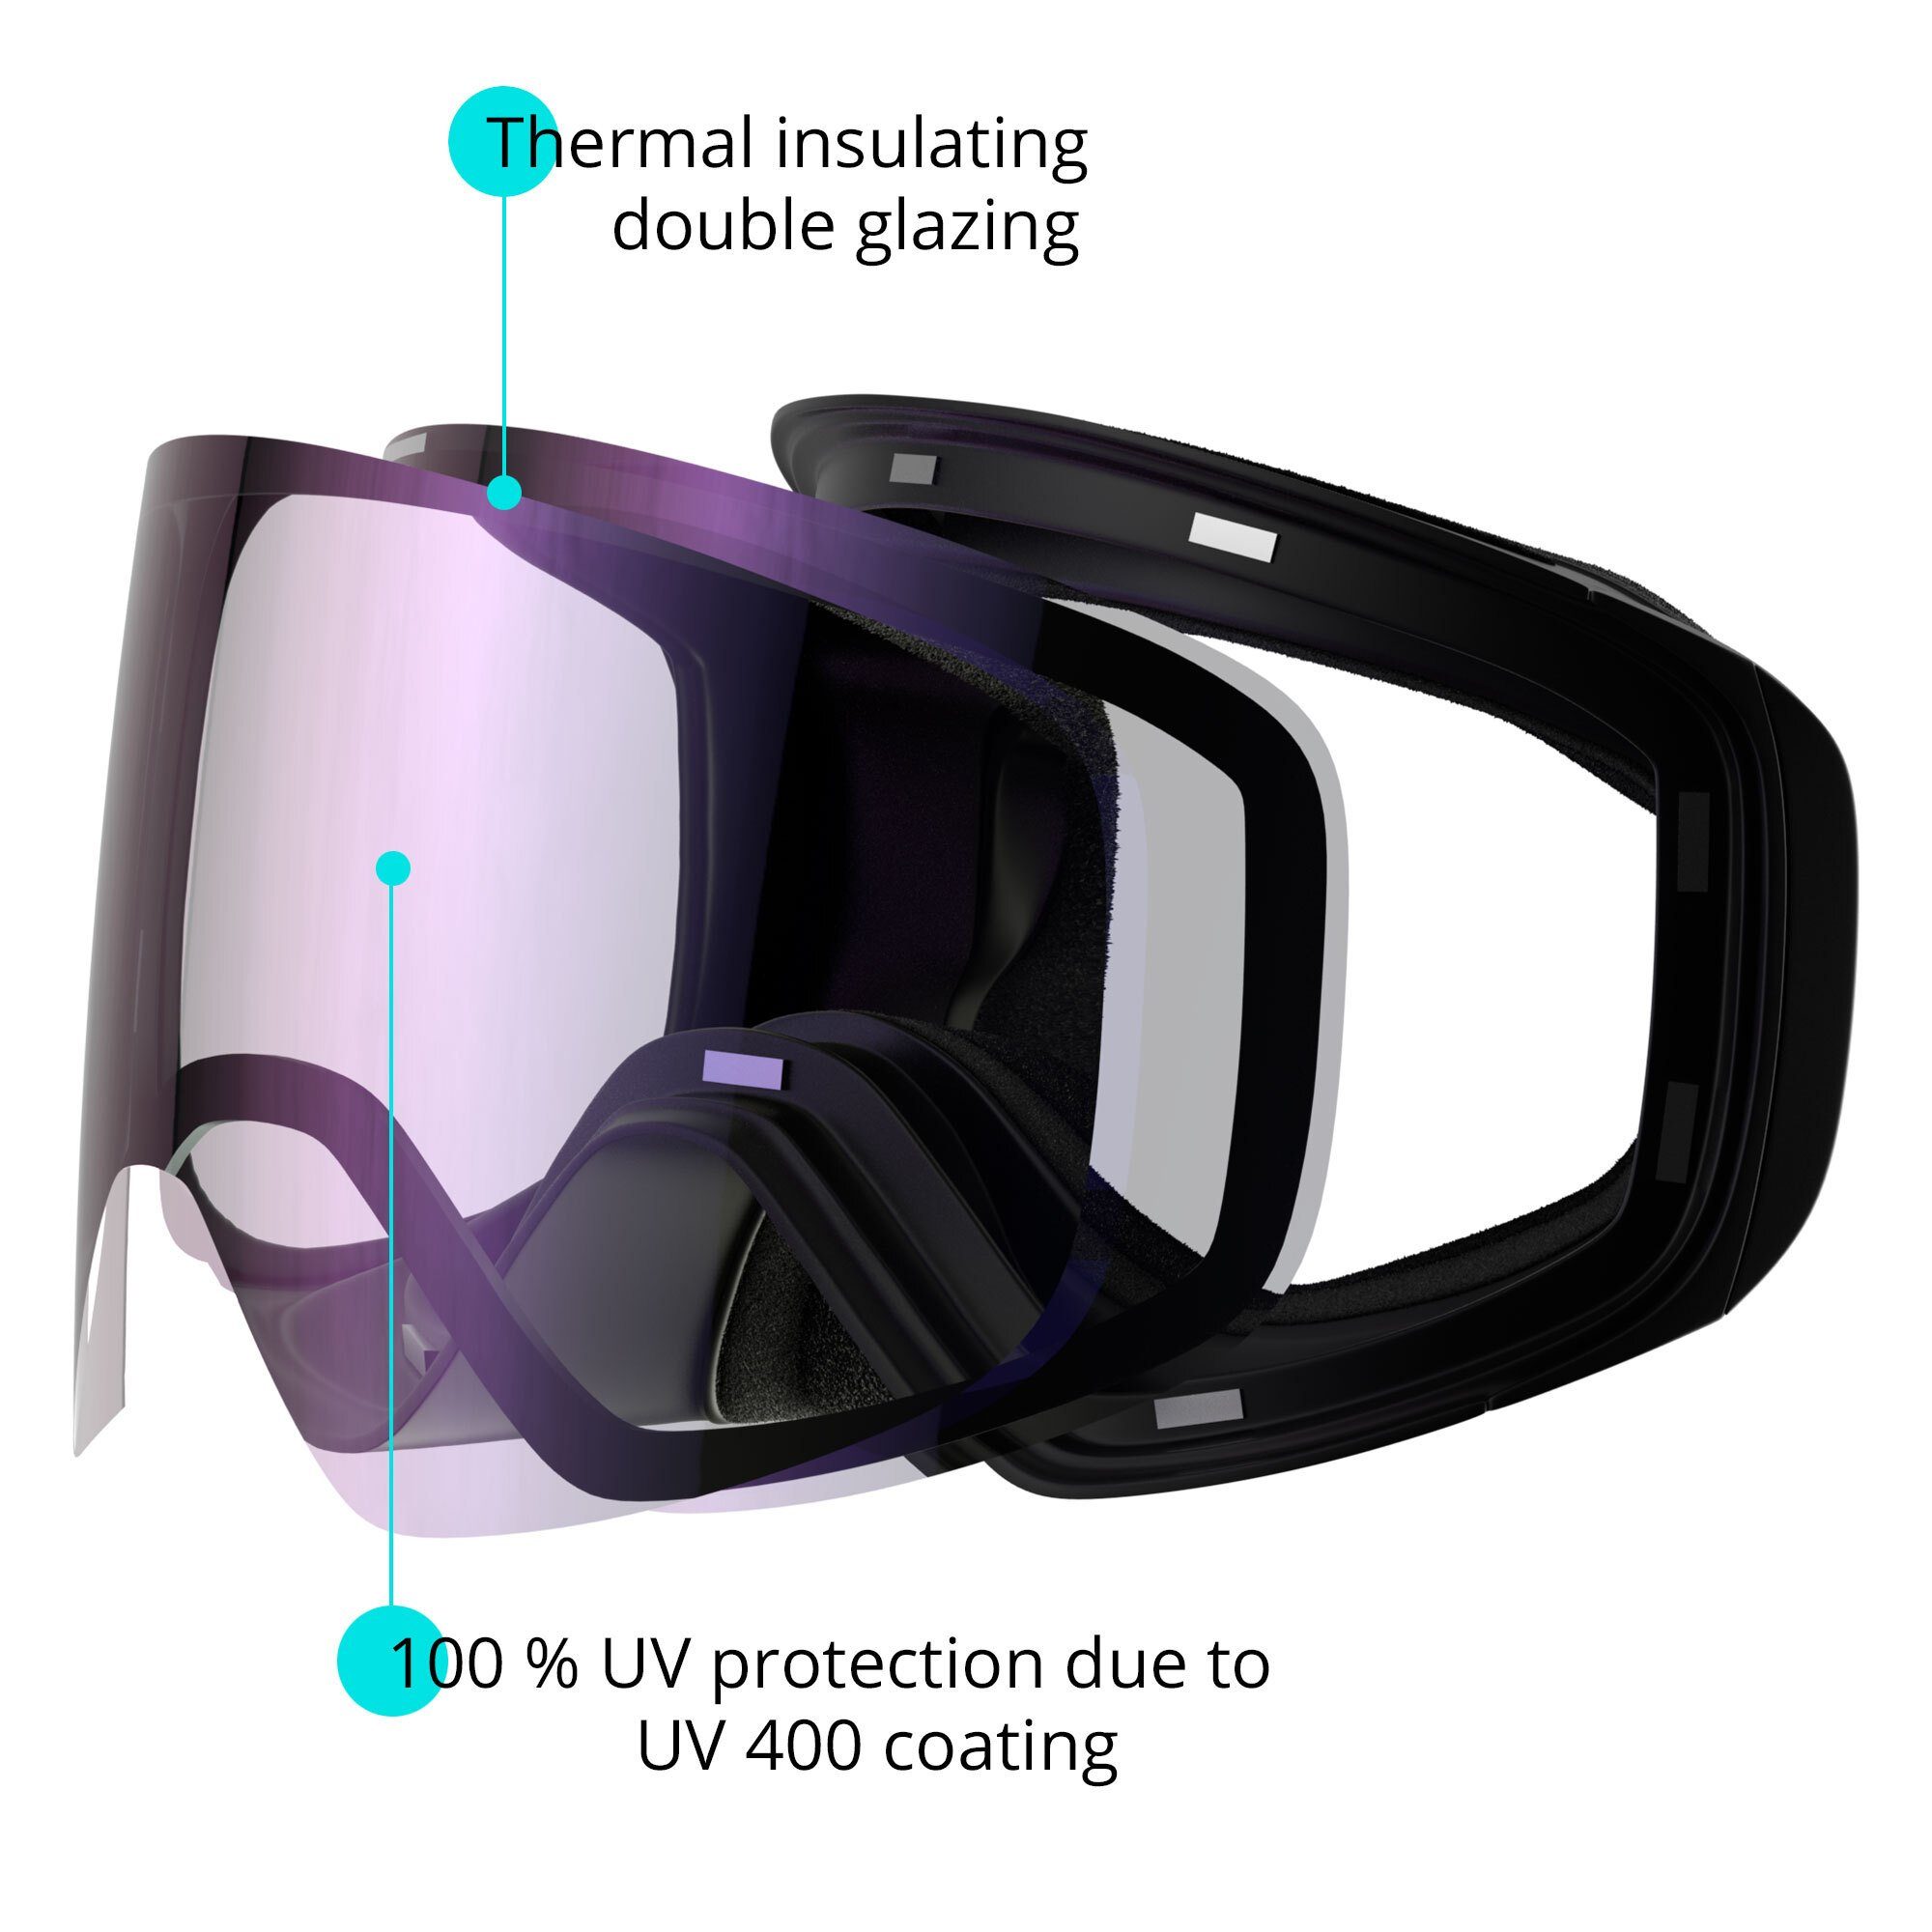 und Jugendliche und ski- und Erwachsene Premium-Ski- TWEAK-X Skibrille für snowboard-brille, Snowboardbrille YEAZ